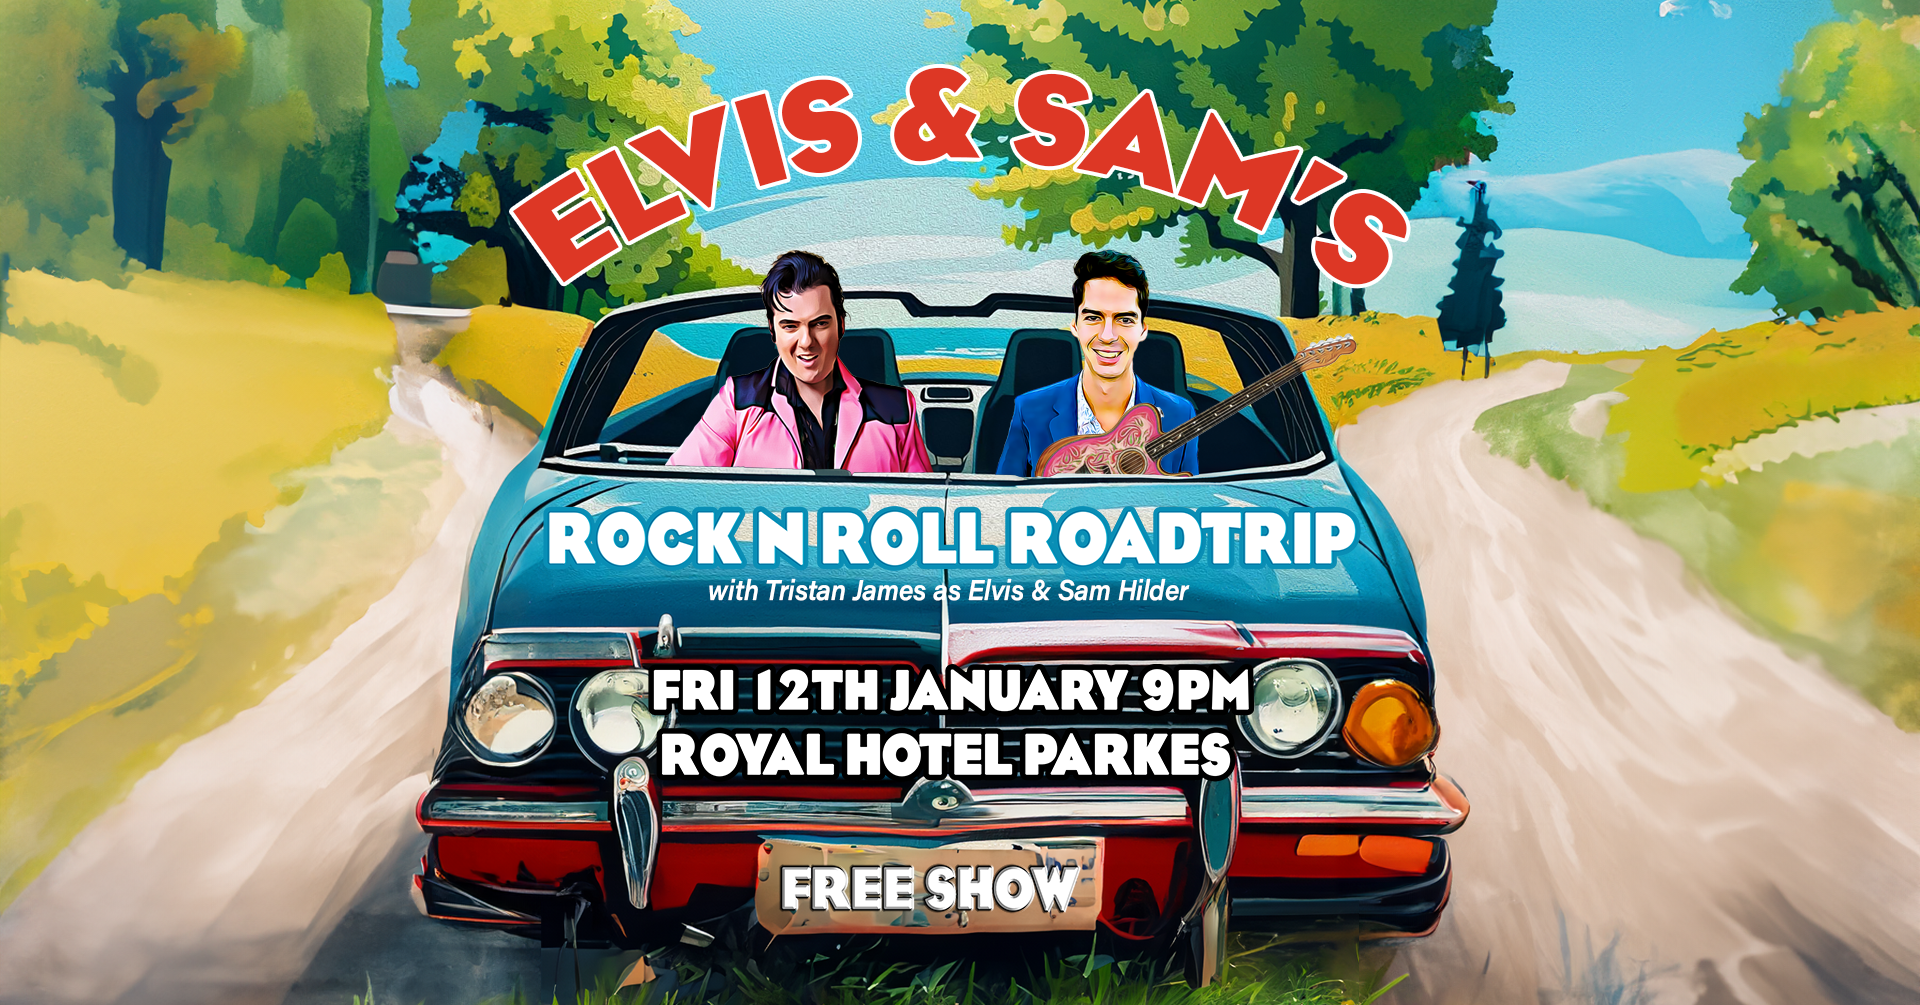 ELVIS & SAM'S ROCK N ROLL ROADTRIP: PARKES